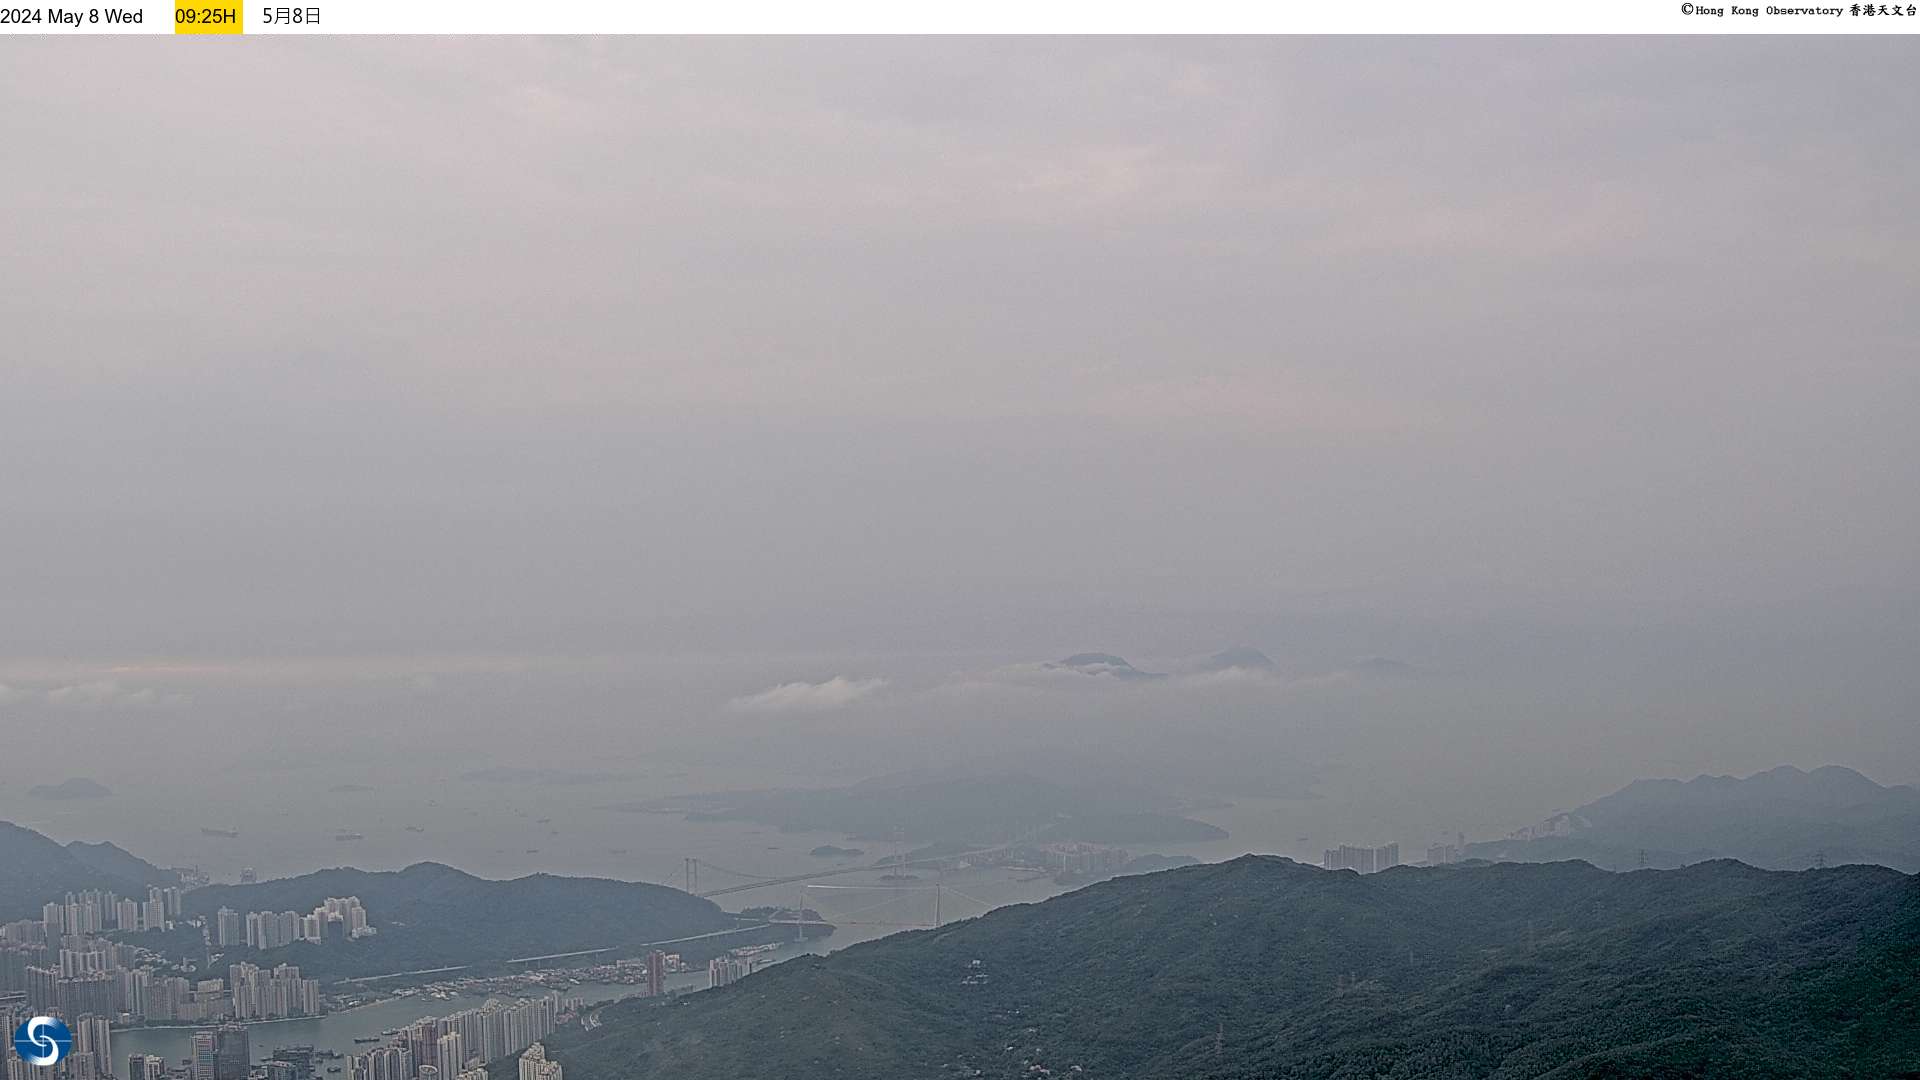 Hong Kong Sun. 09:33